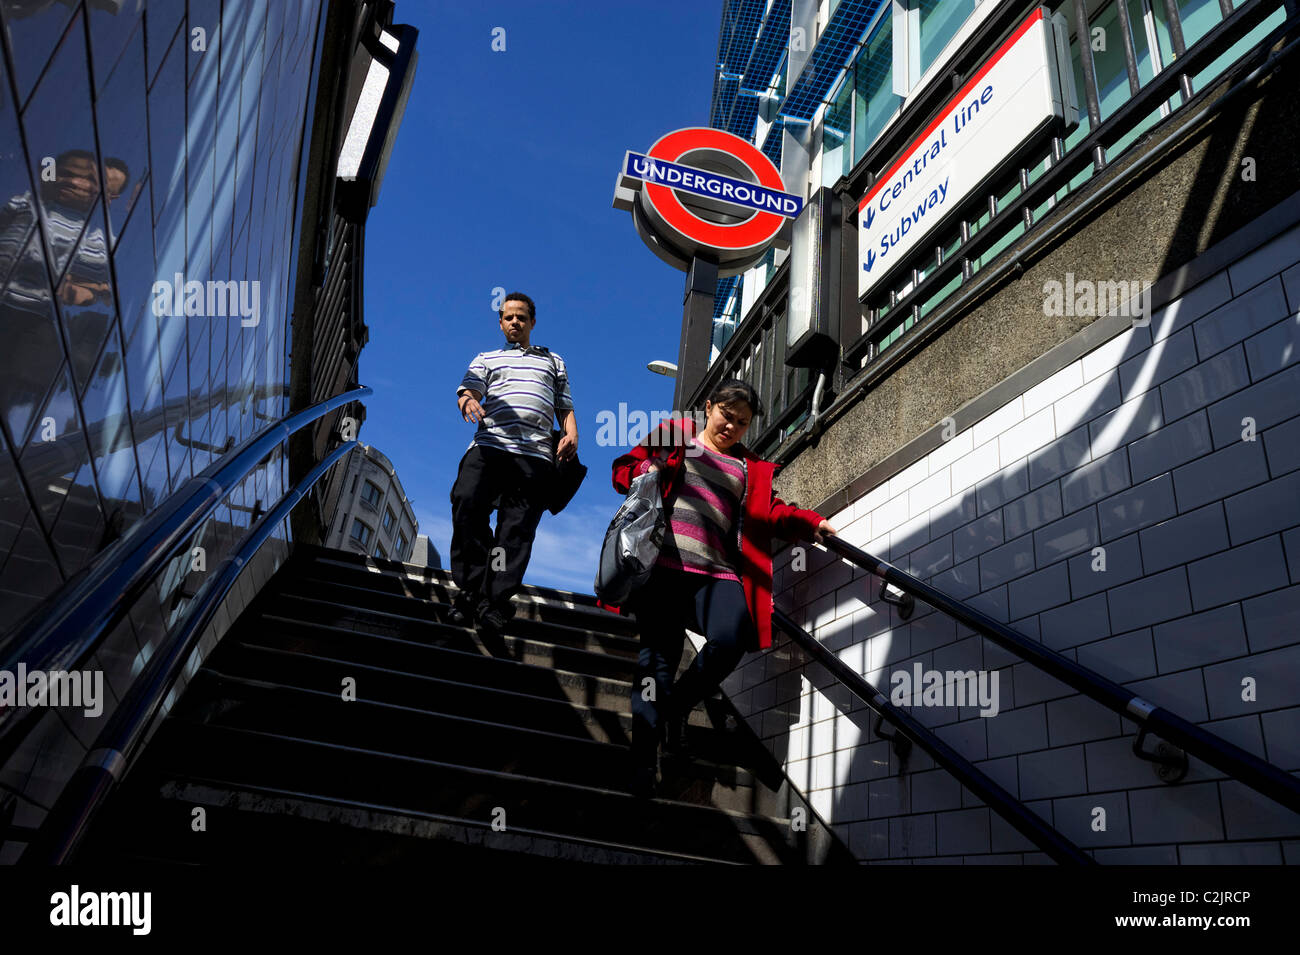 Entrée de la station de métro souterrain, London, England, UK Banque D'Images